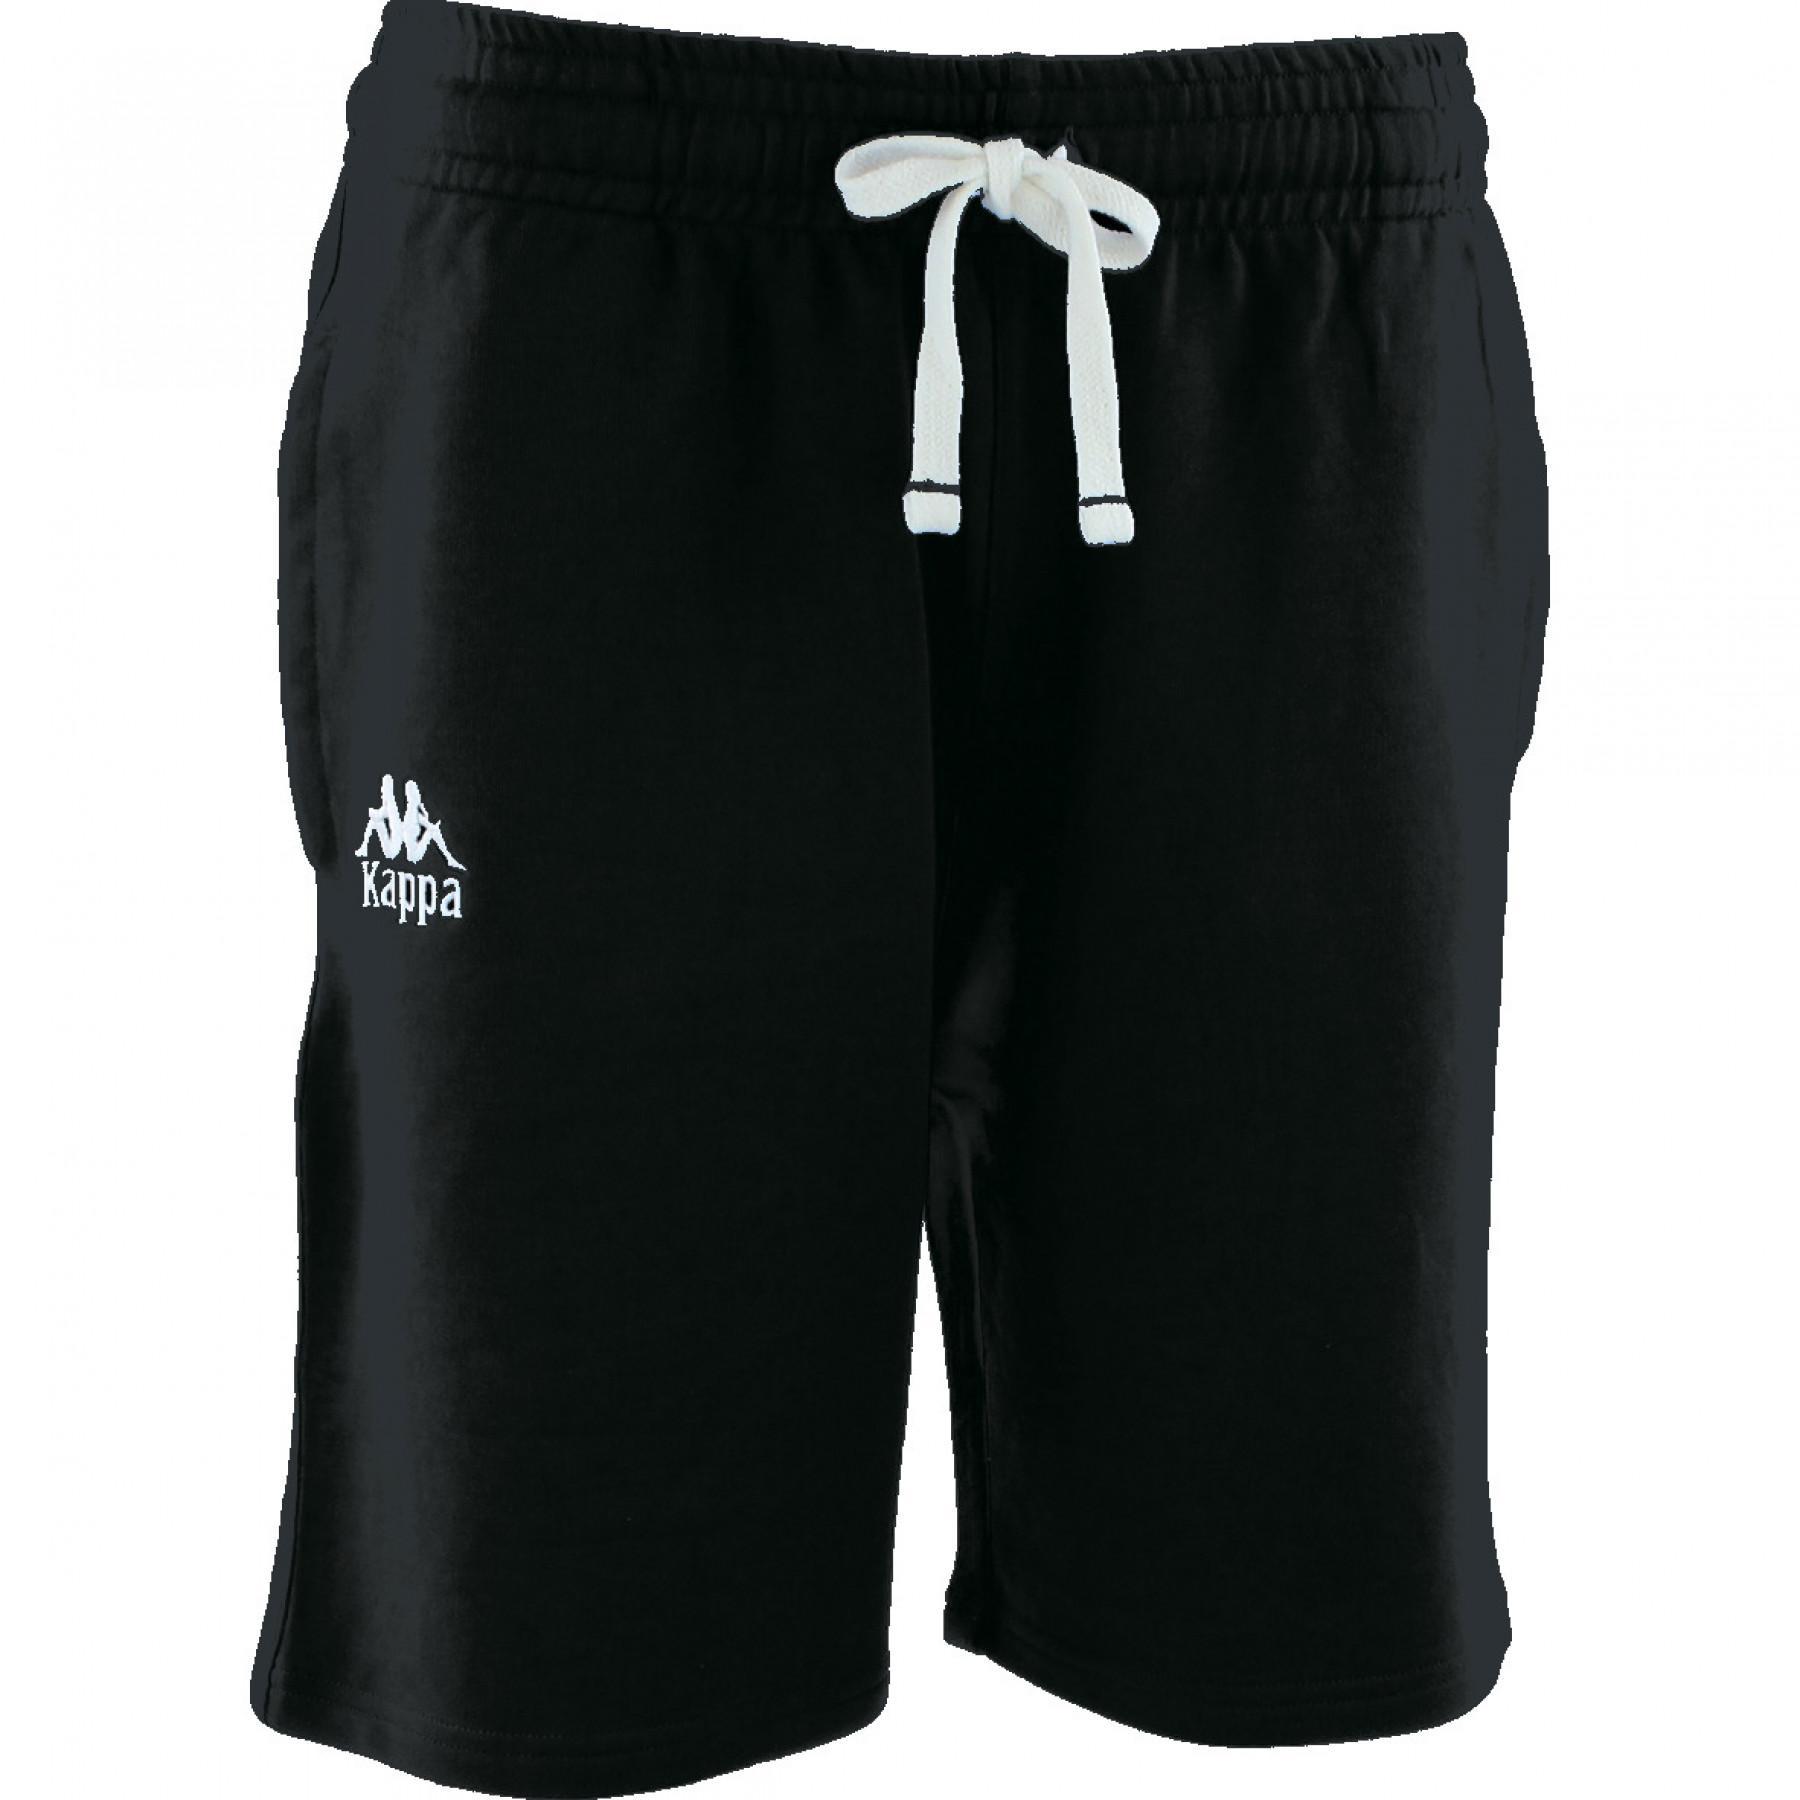 Bermuda shorts Kappa Bastina